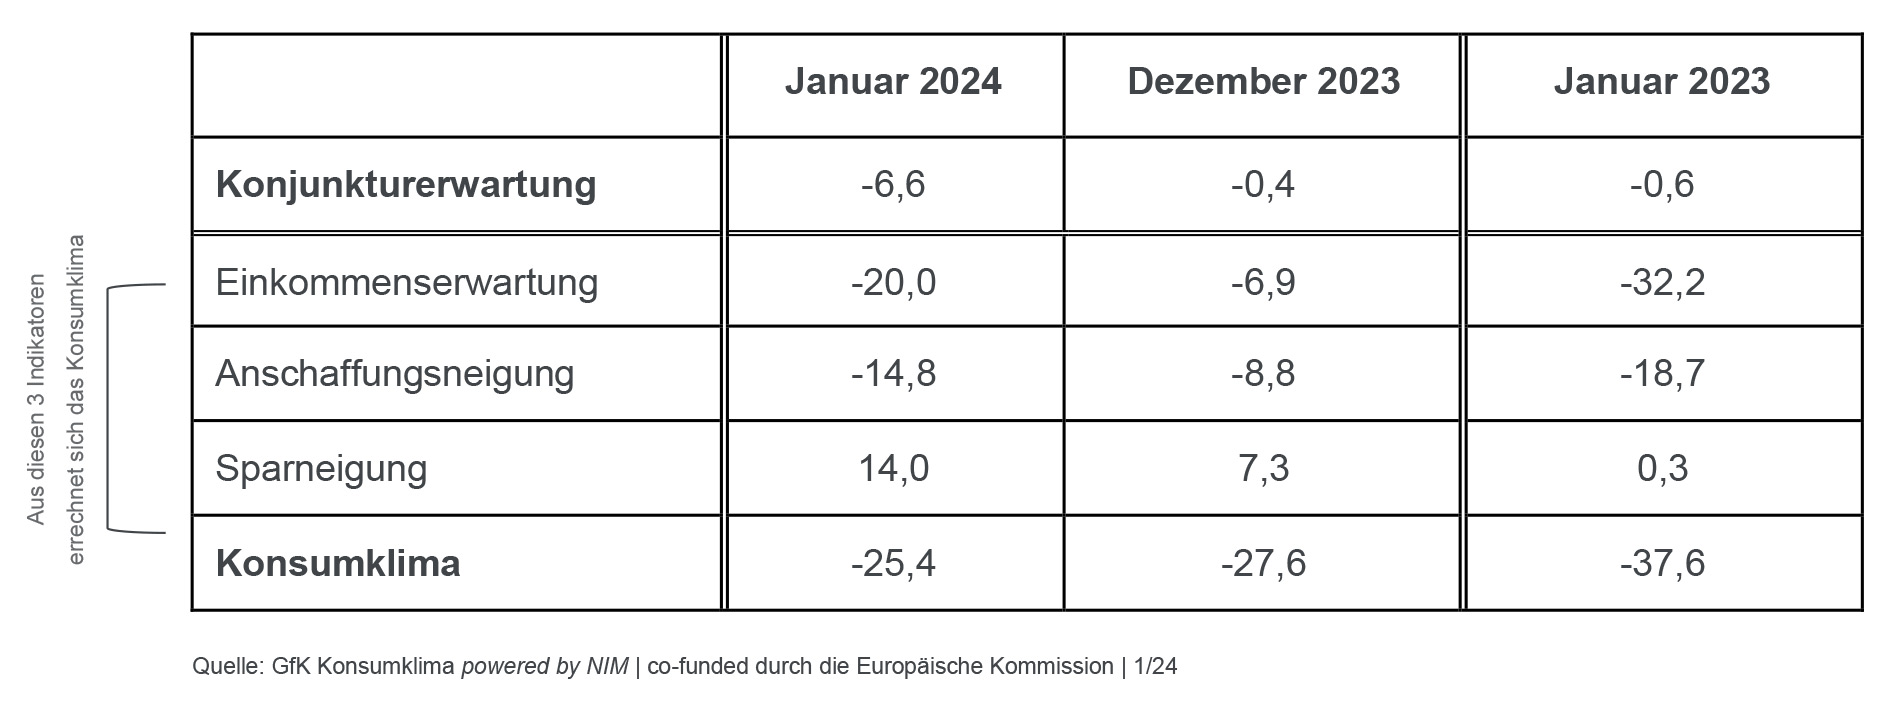 Die Tabelle zeigt die Werte der einzelnen Indikatoren im Januar 2024 im Vergleich zum Vormonat und Vorjahr.